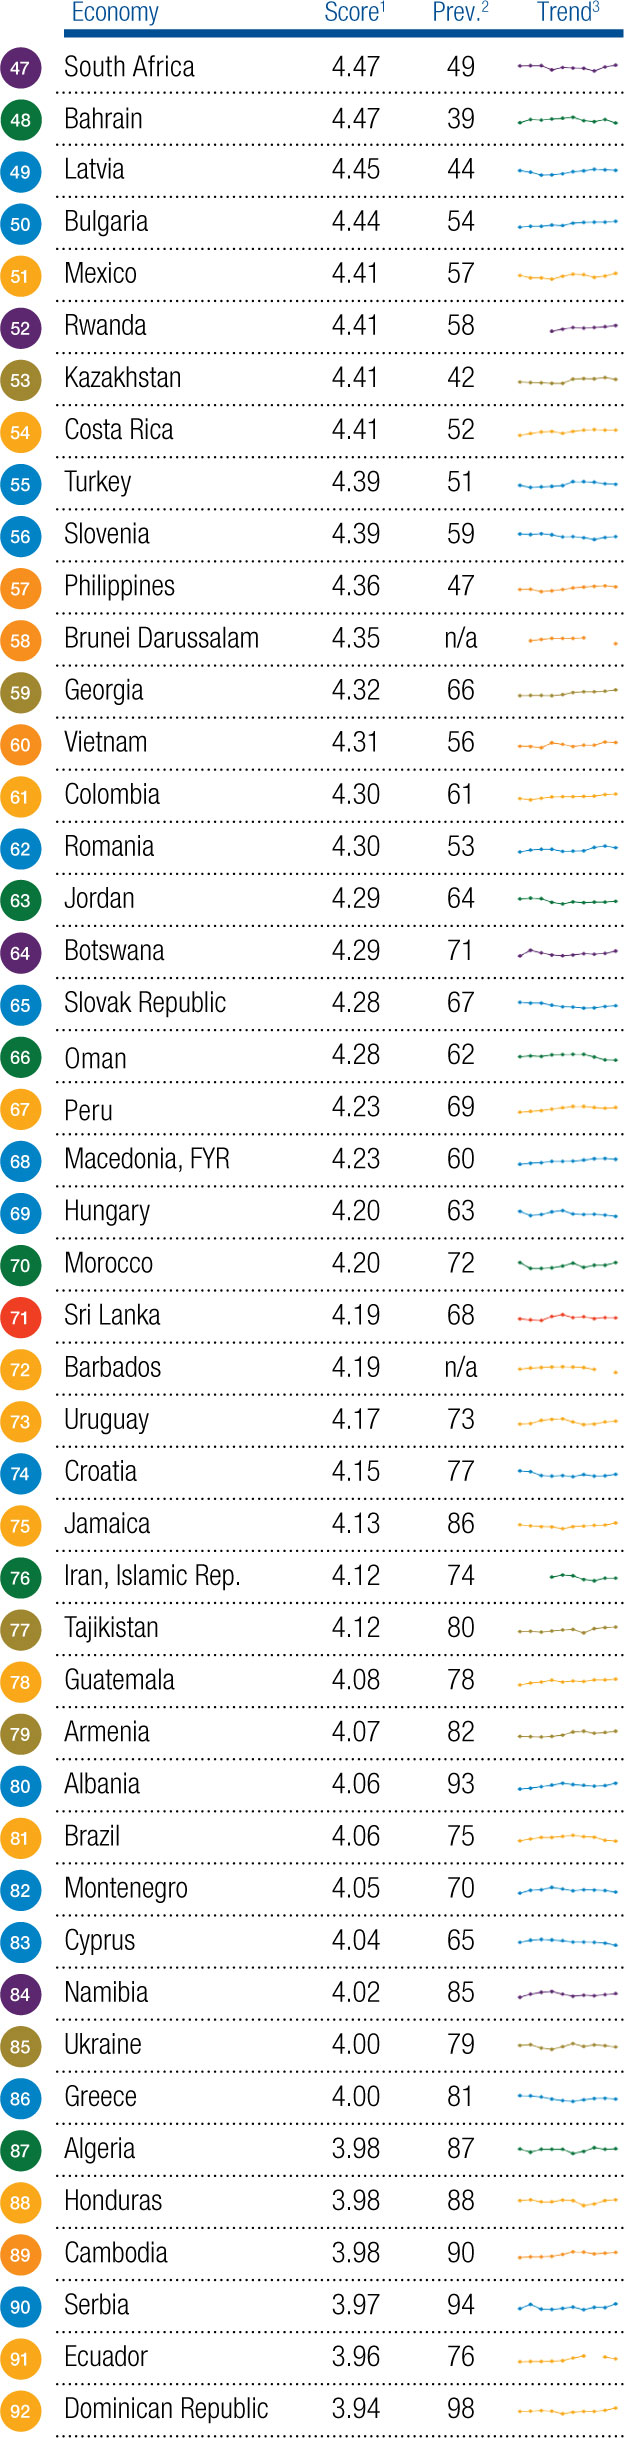 Рейтинг конкурентоспособности экономик стран - 2016: Швейцария - лидер, Украина - на 85 месте